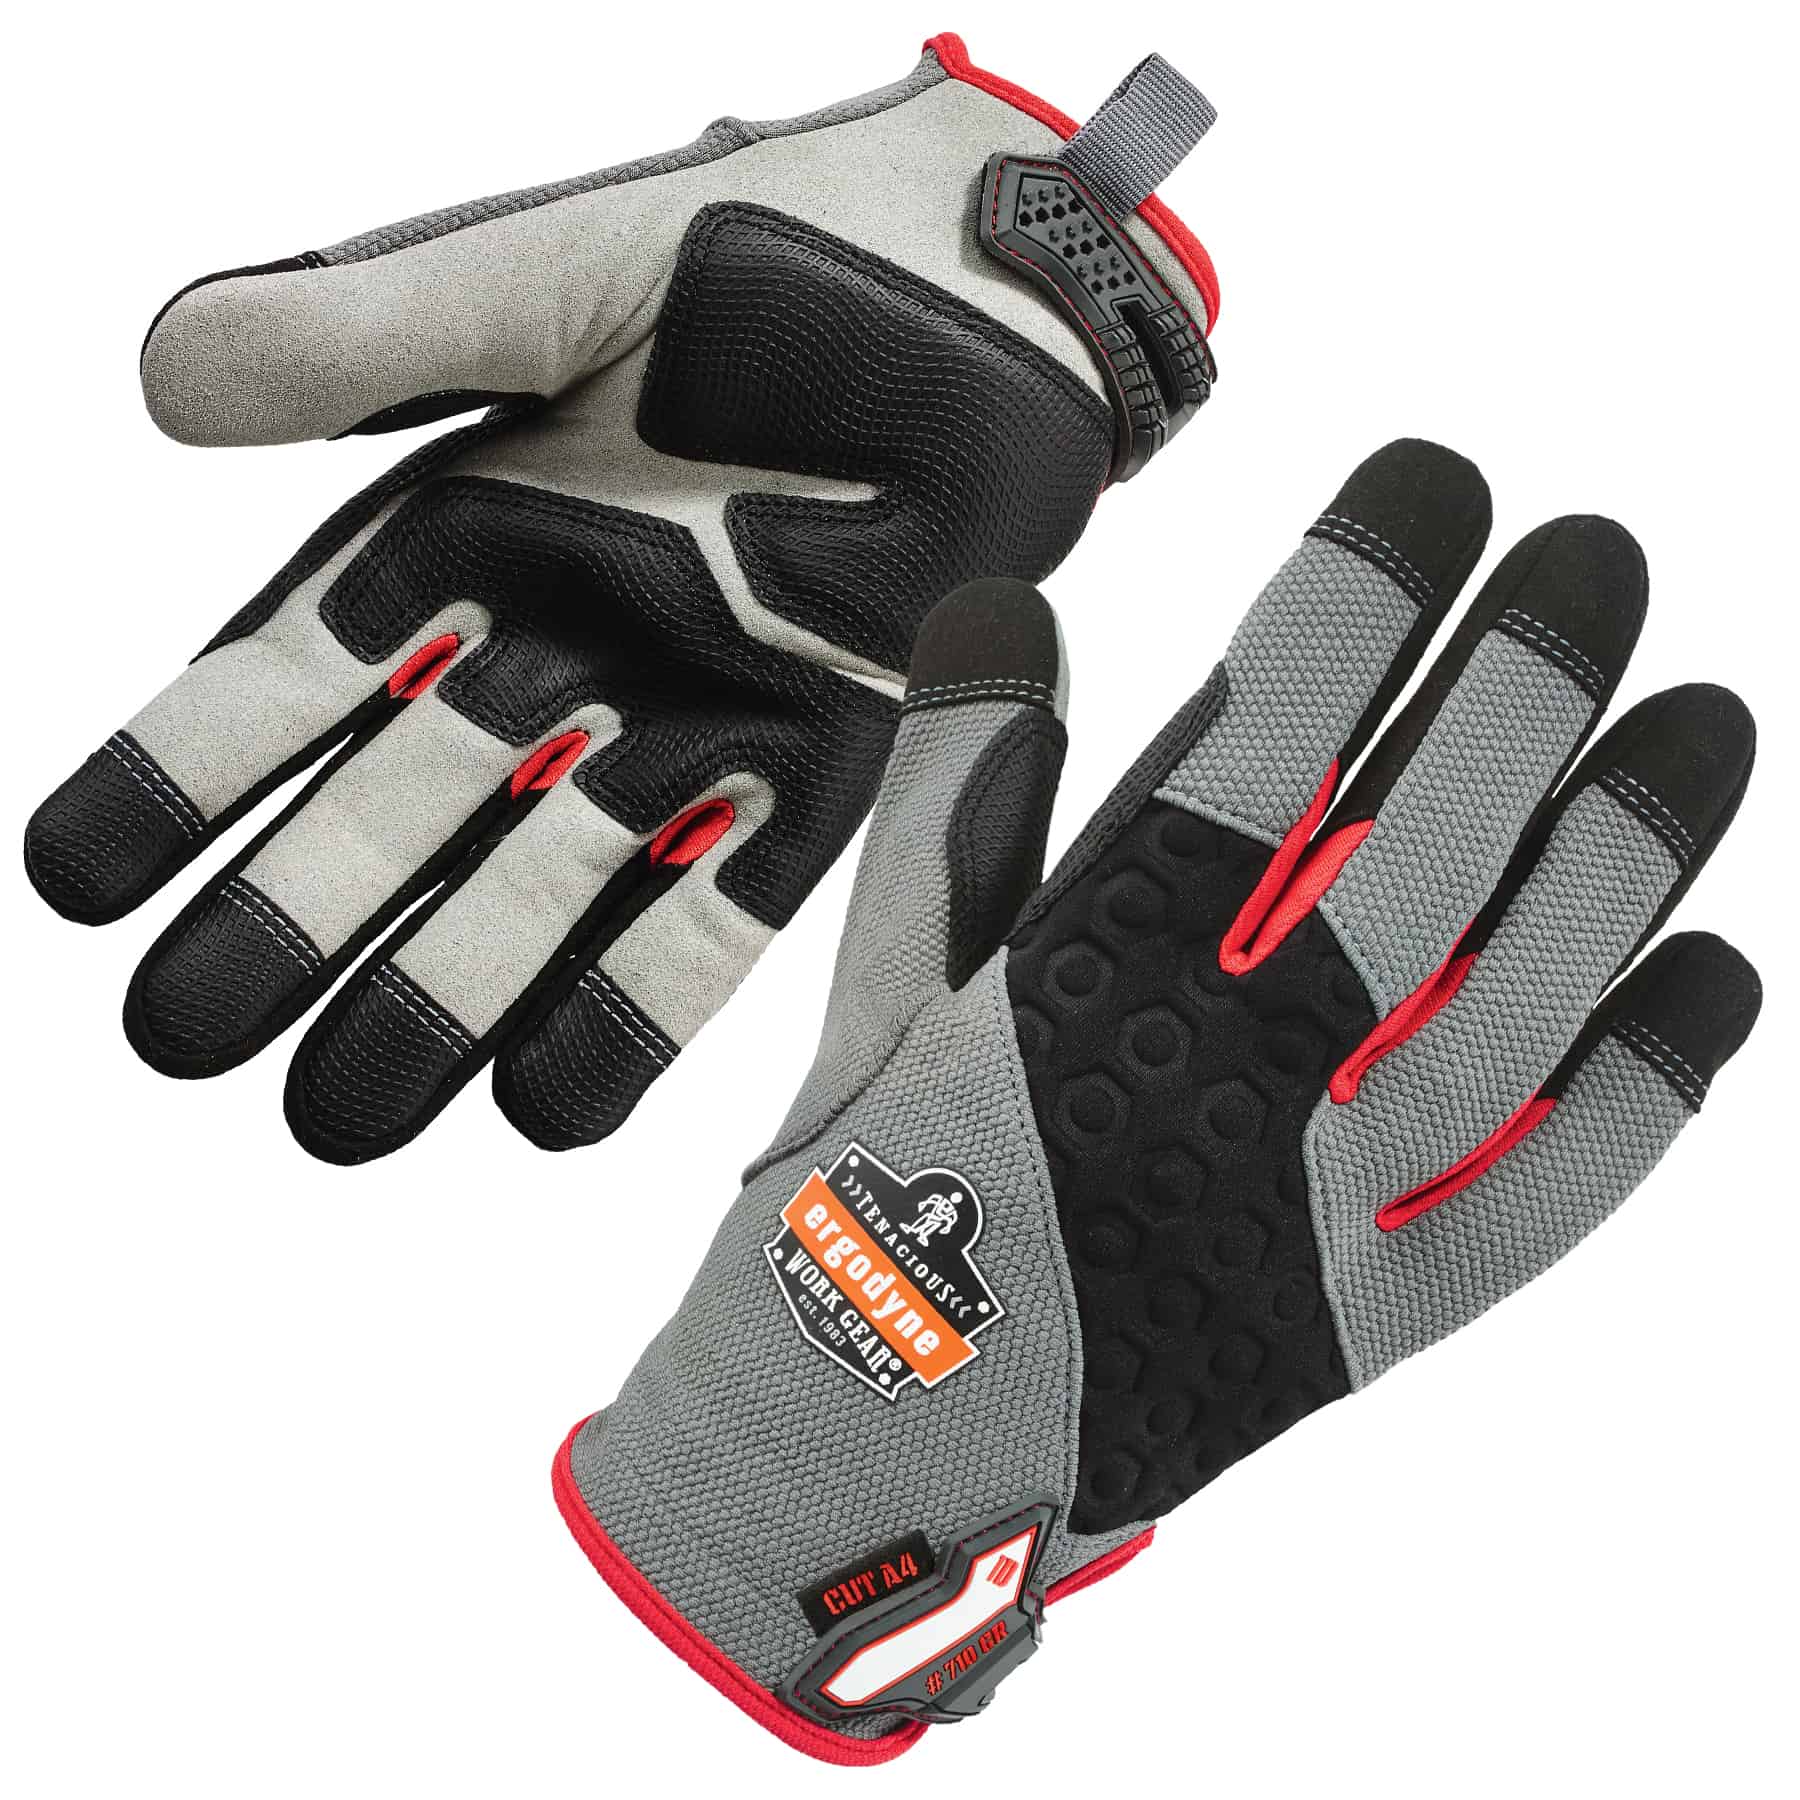 Buy Cut-Resistant Gloves